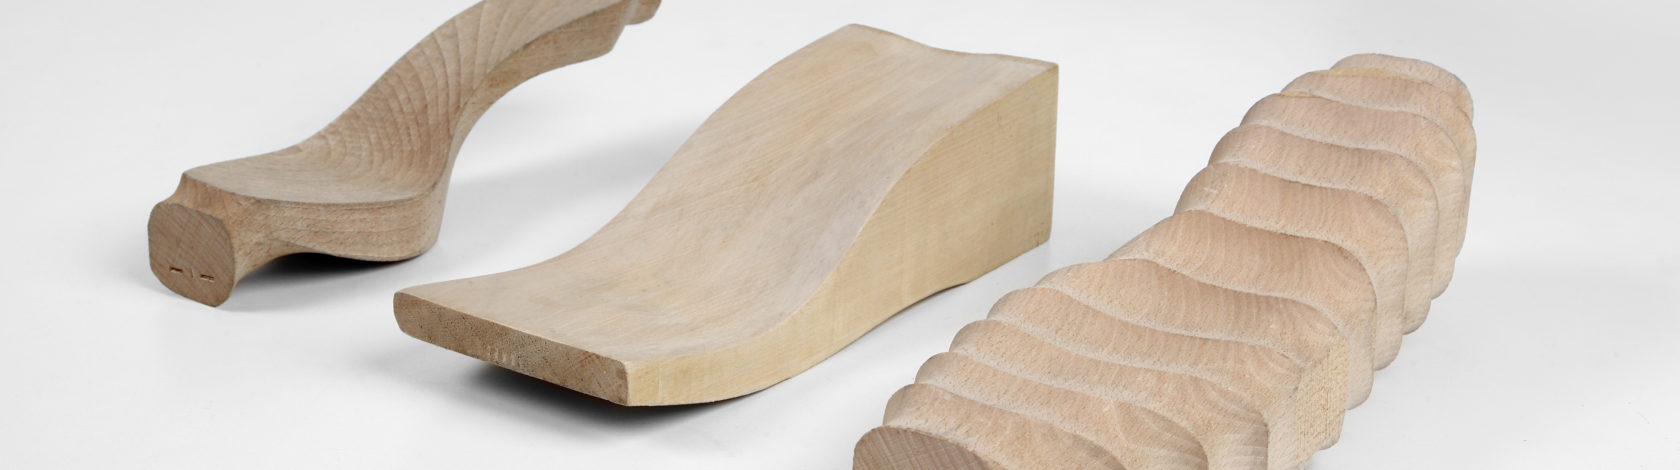 Semilavorati in legno di faggio/ontano sagomati per calzature